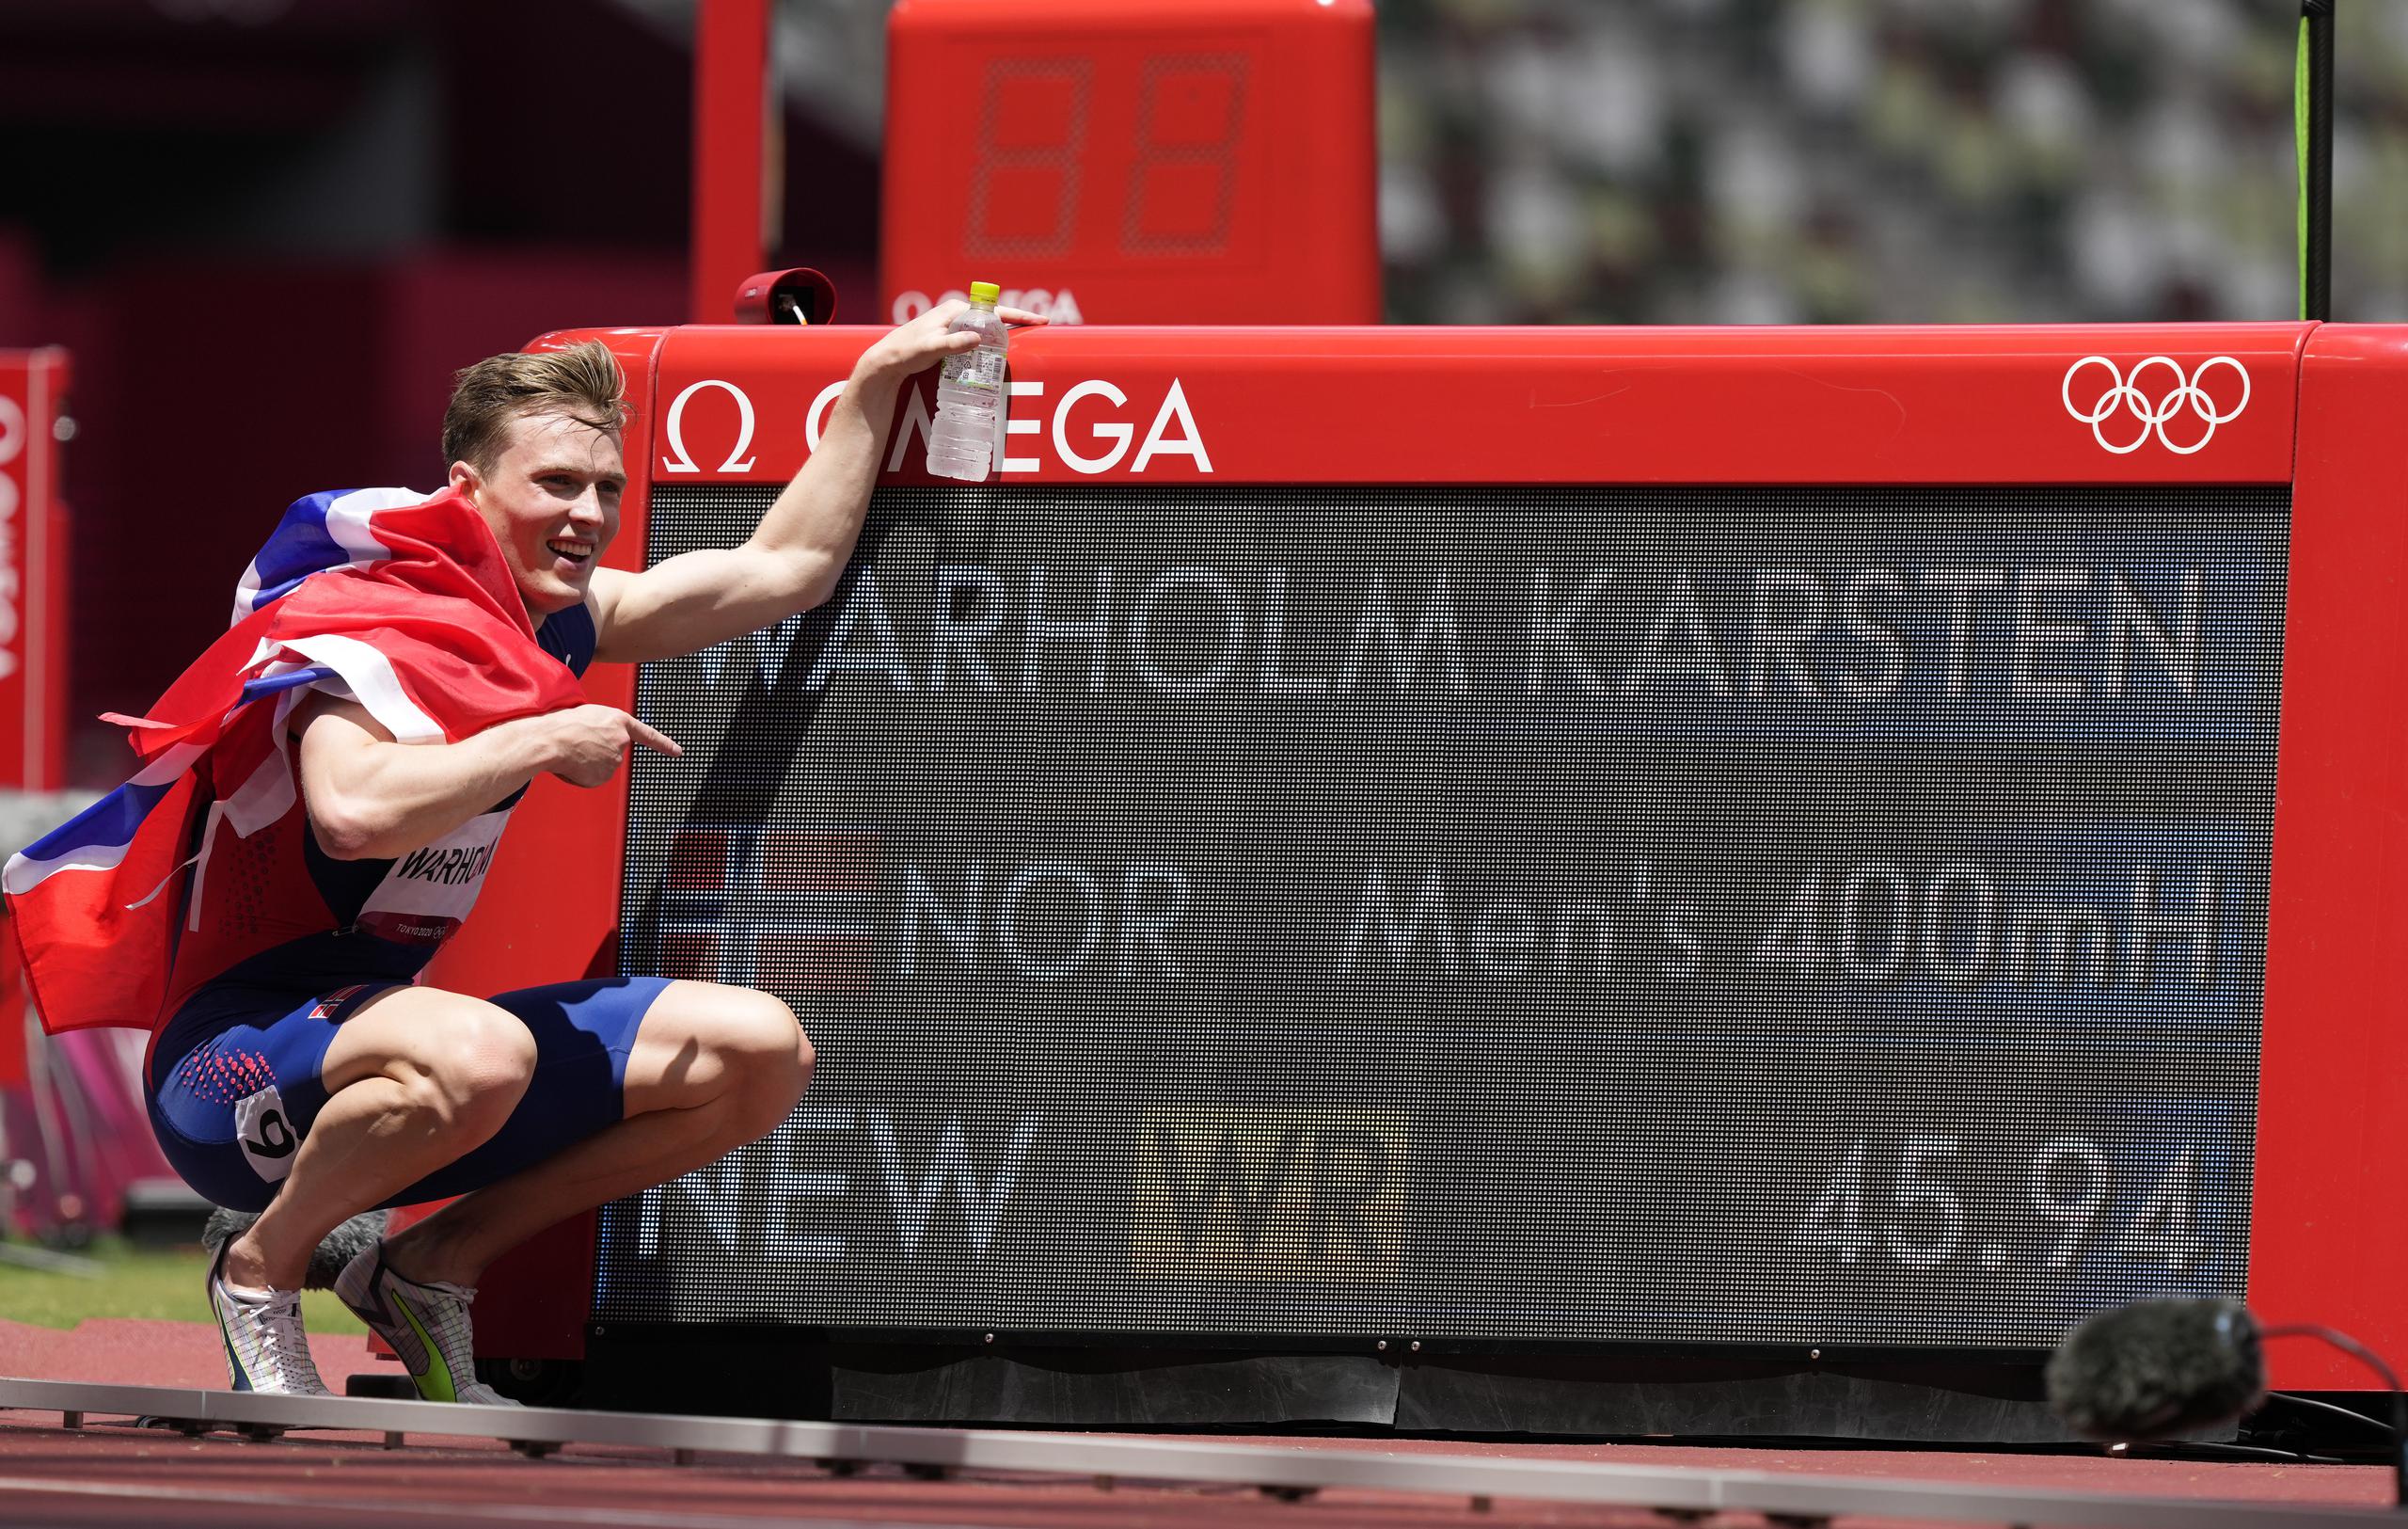 Karsten Warholm posa junto a la pizarra que despliega su nueva marca mundial en los 400 metros con vallas.